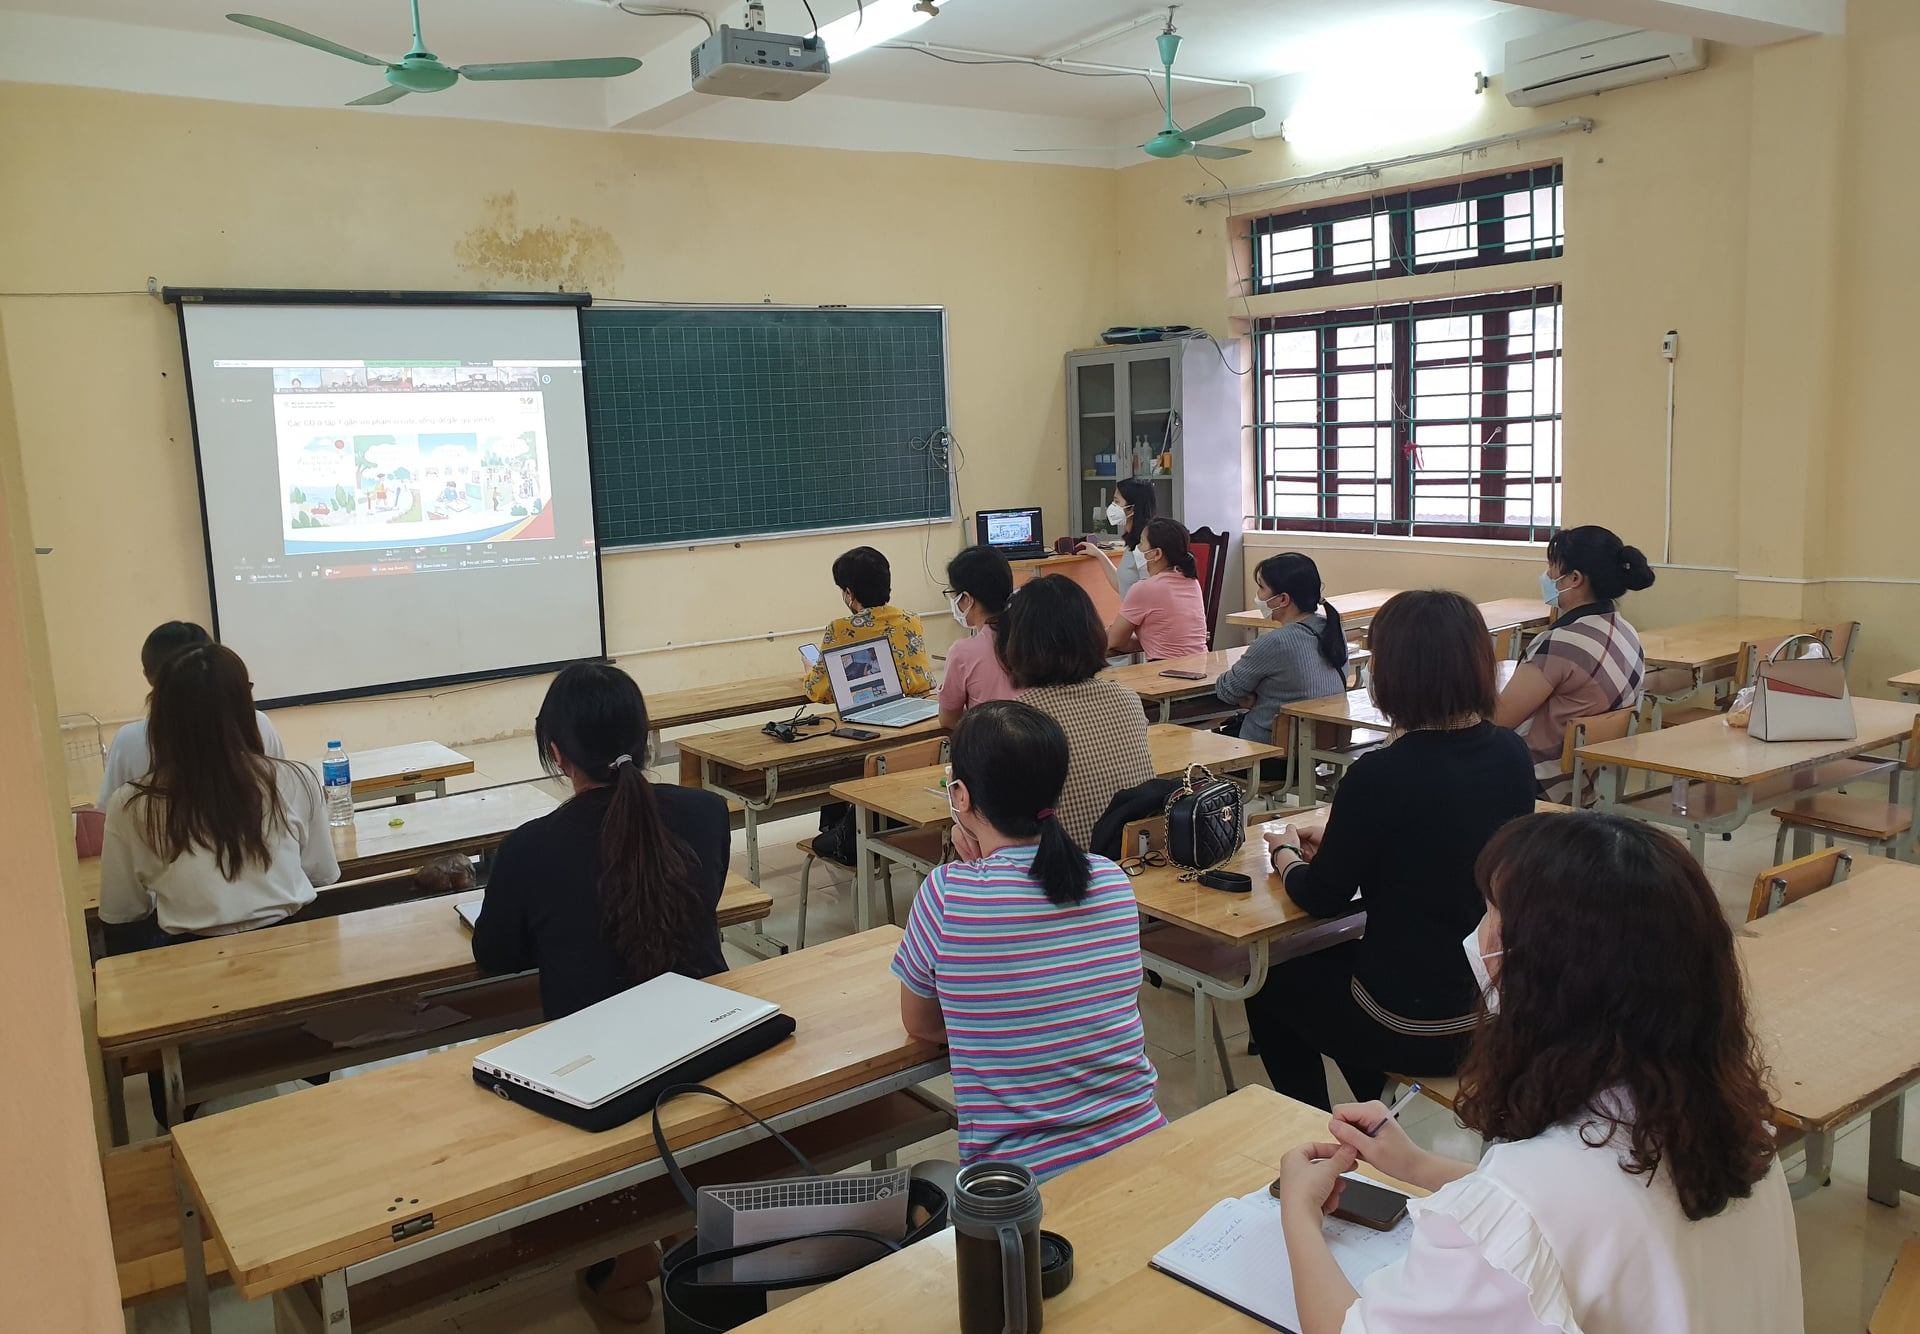 Cập nhật các phương thức giảng dạy tiên tiến nhất tại trường THPT Hoài Đức, Hà Nội. Chương trình CNTT đổi mới giảng dạy sẽ giúp học sinh tiếp cận với công nghệ thông tin trong môi trường học tập thân thiện và hiệu quả.